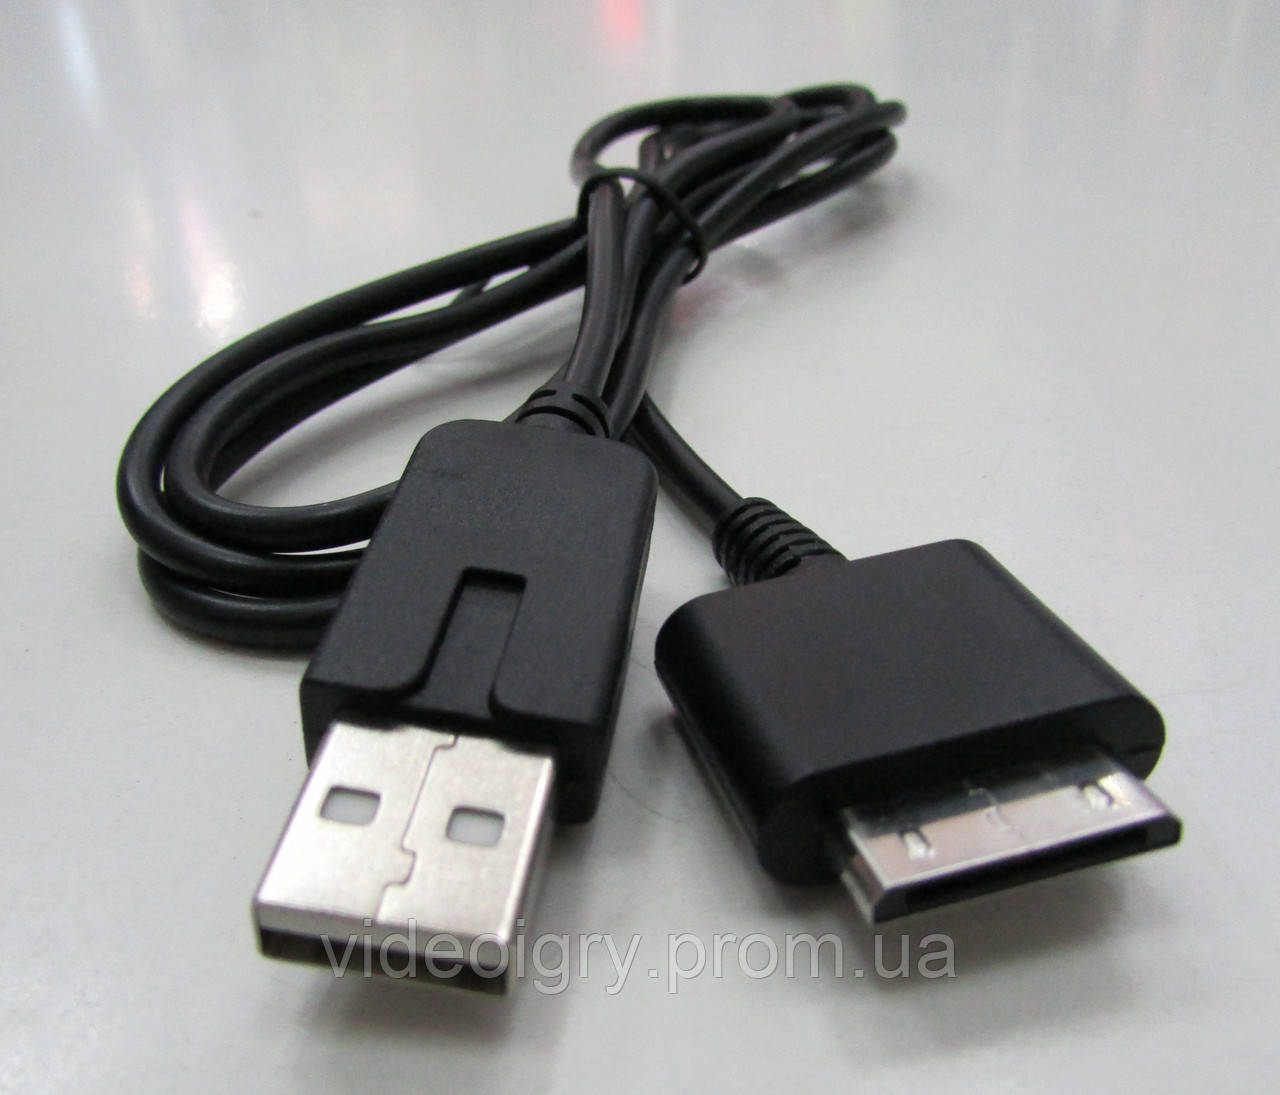 USB кабель PSP Go,USB Data cable PSP Go